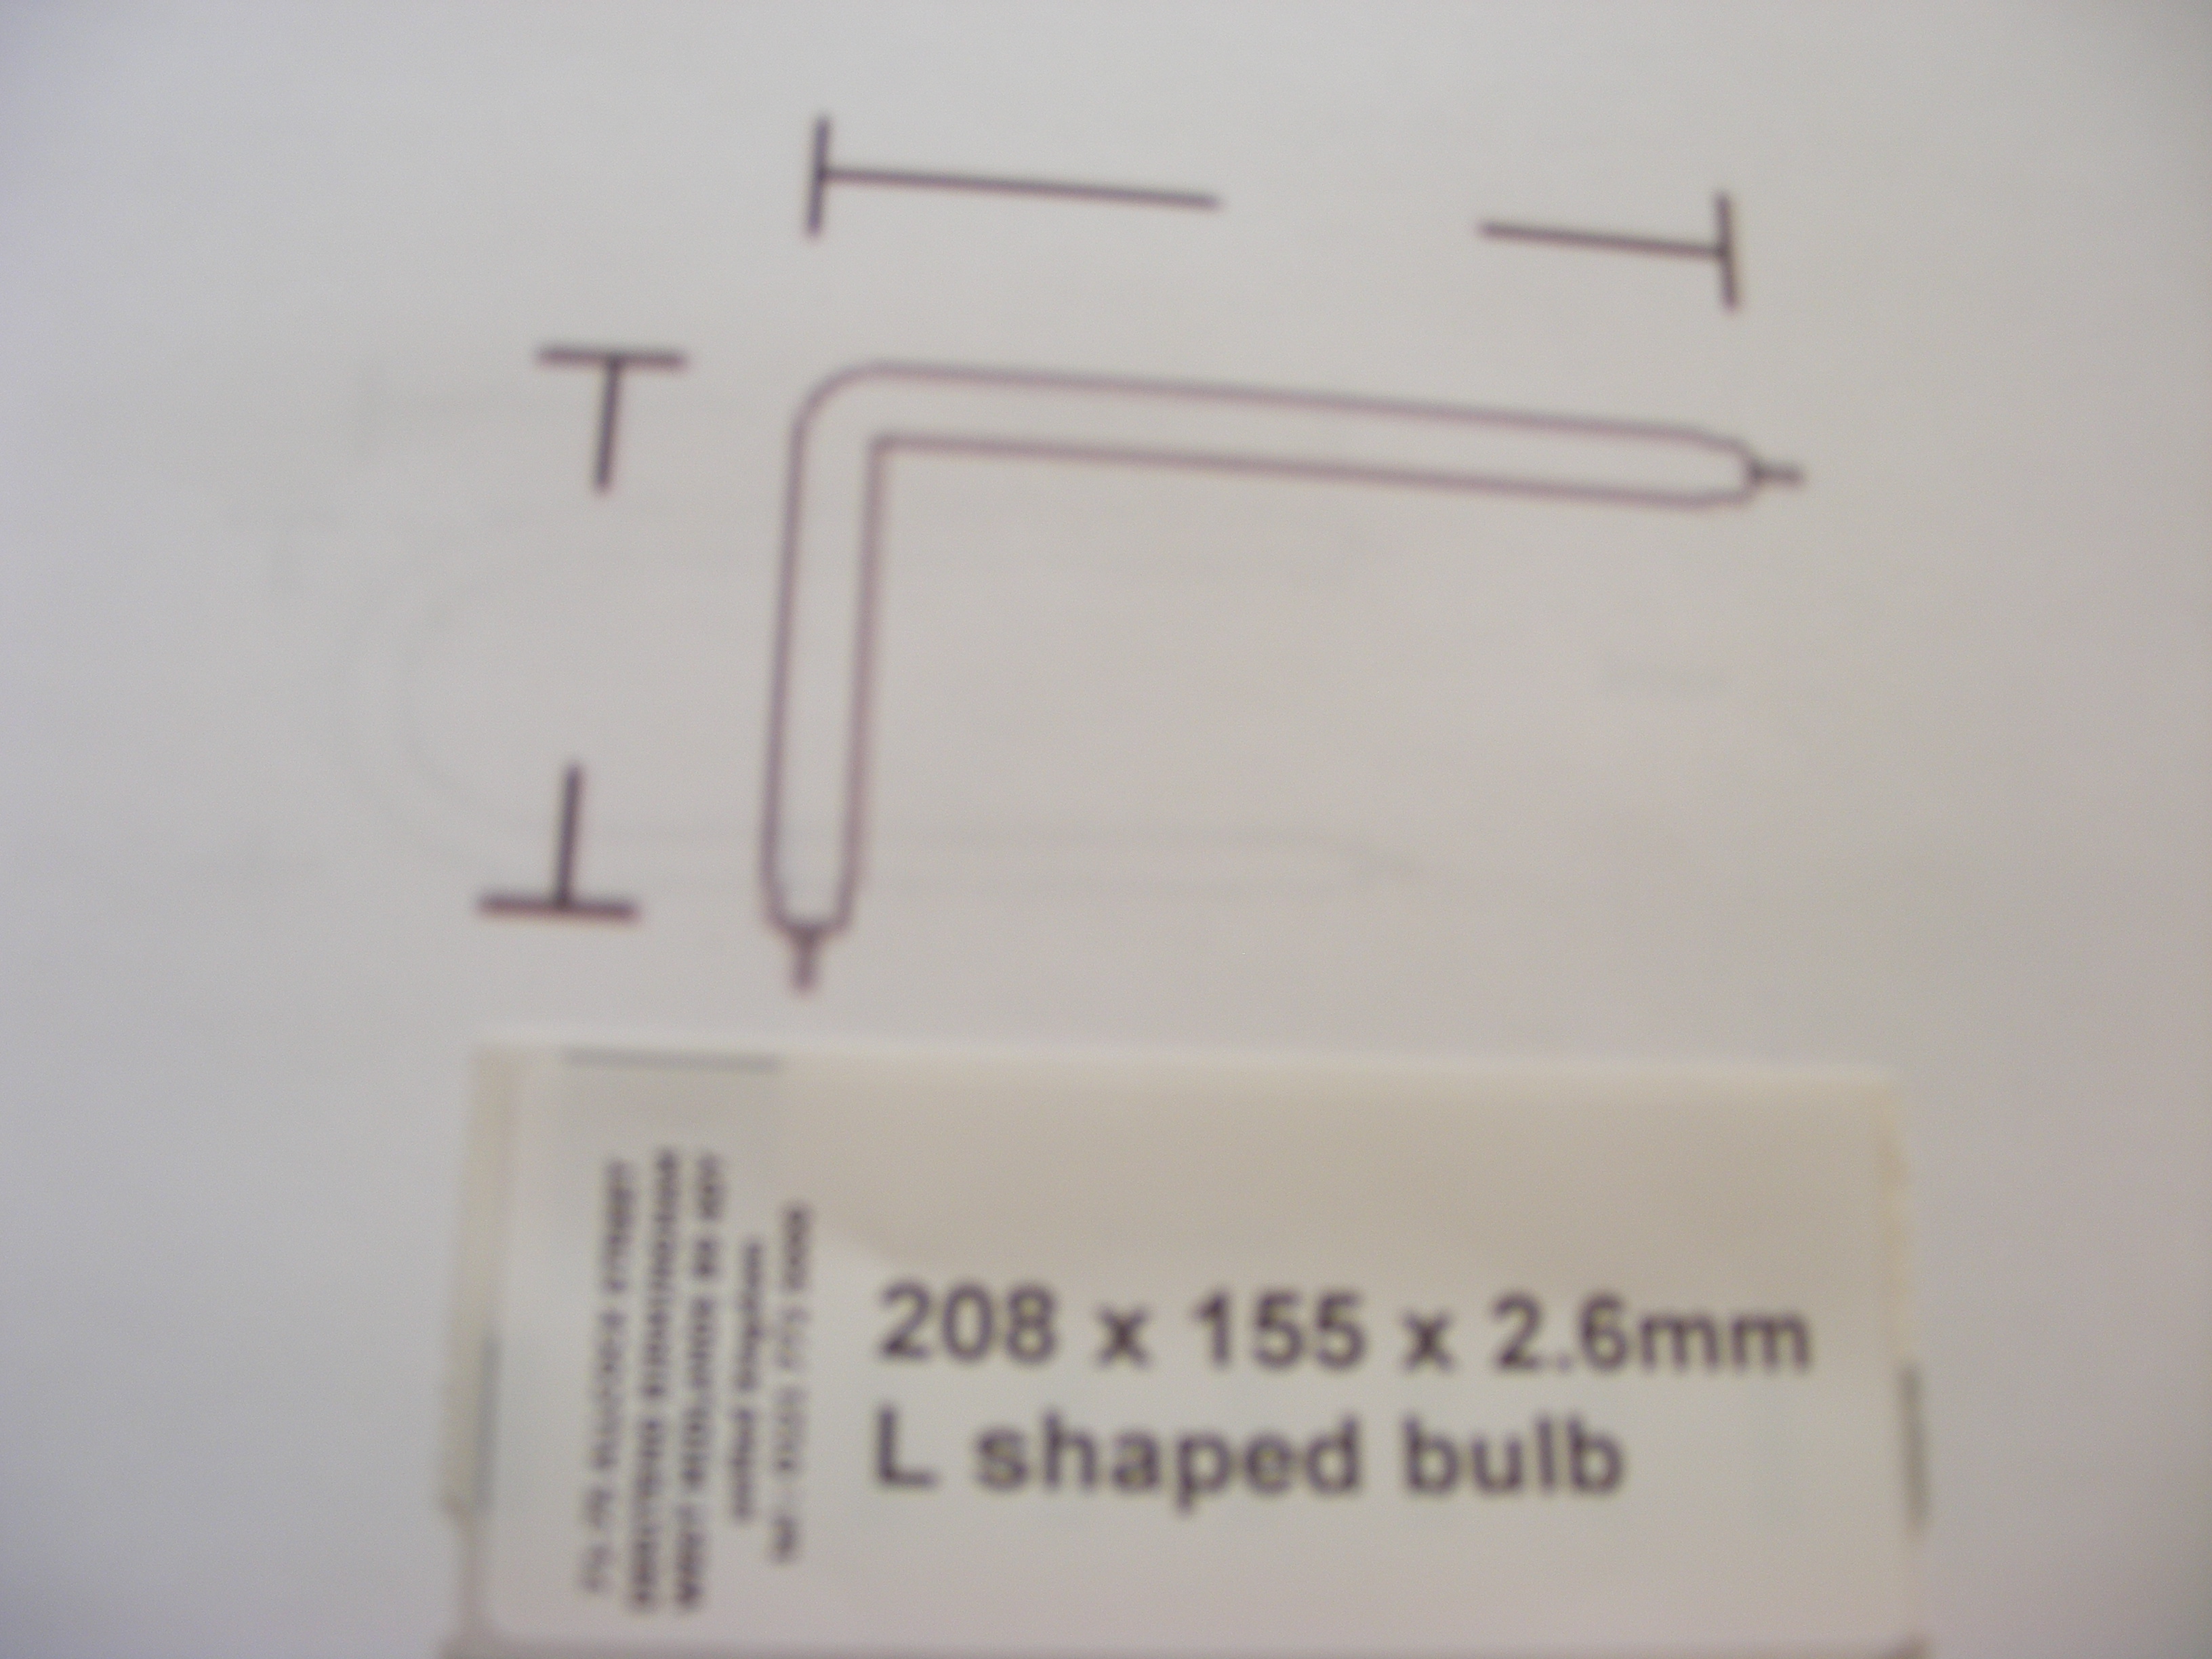 160 x 100 x 2.4mm L shaped bulb